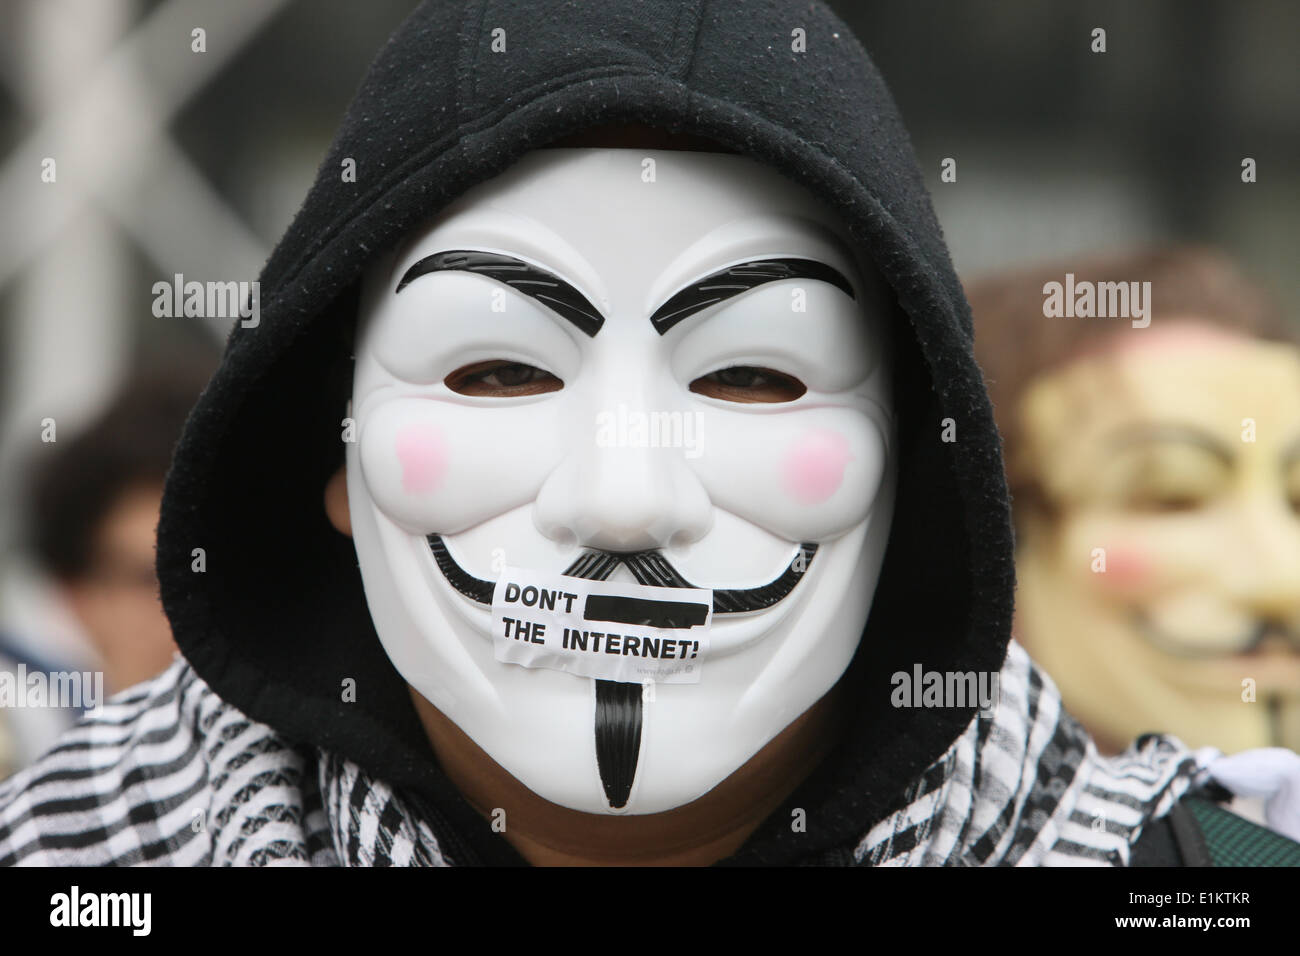 Demonstrant mit Guy Fawkes Maske, eingetragenes Warenzeichen der Anonymous-Bewegung und basierend auf einem Charakter in dem Film V wie Vendetta. Stockfoto